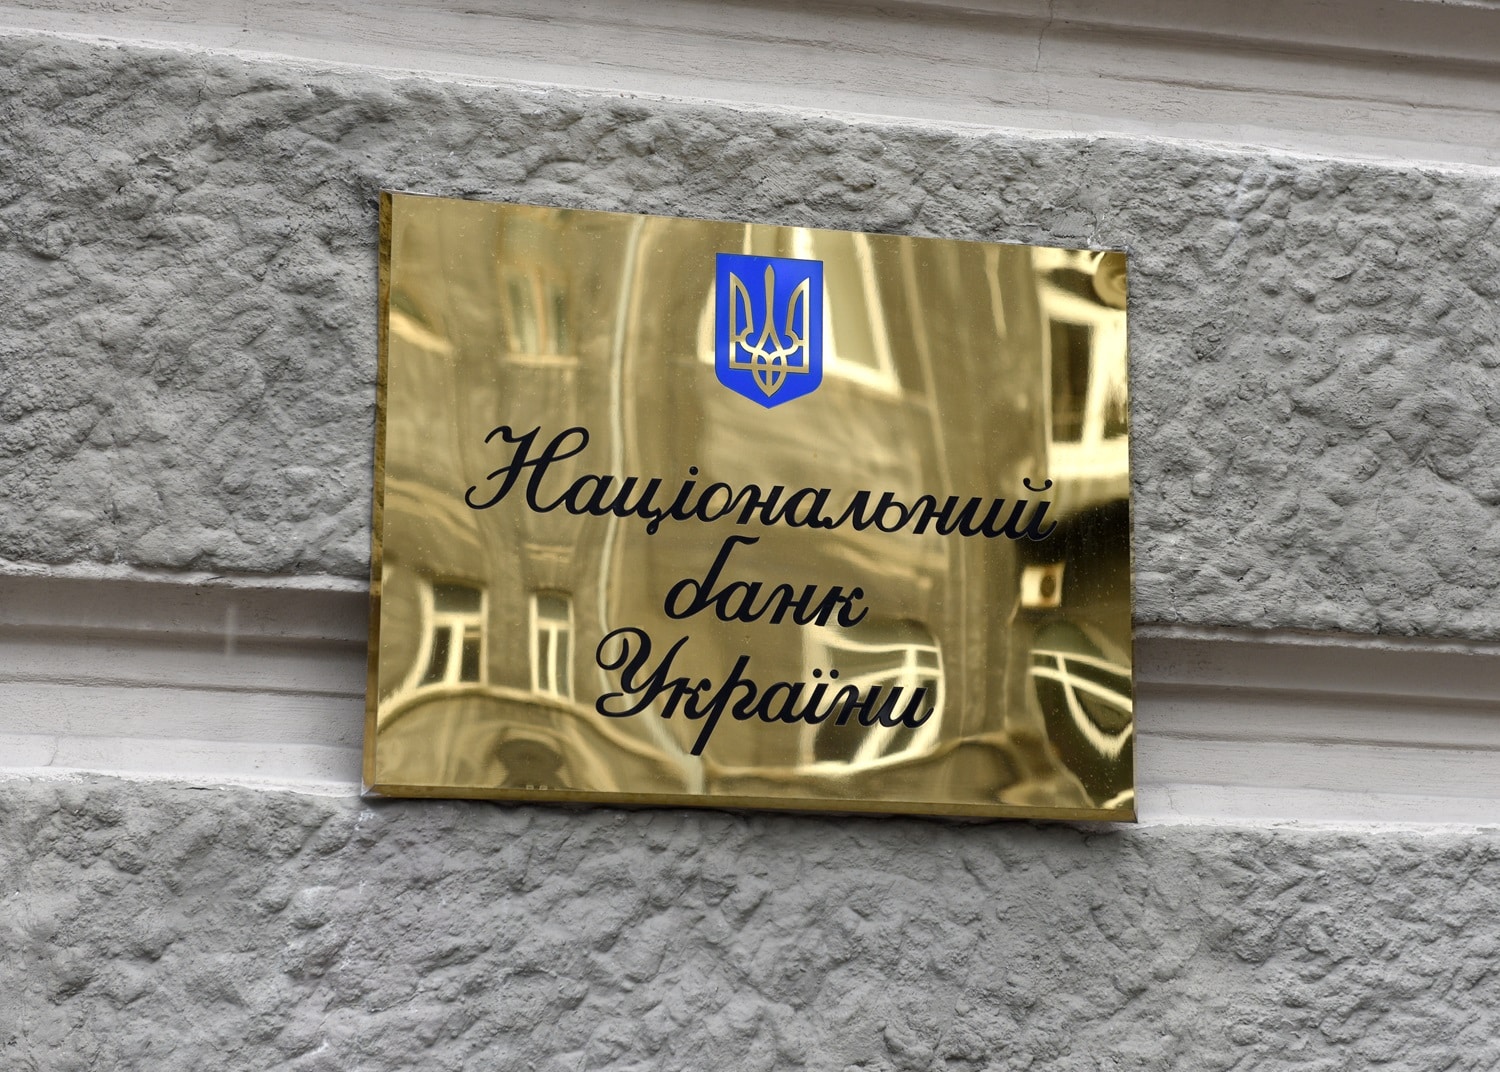 Представители Центрального банка Украины считают, что «криптовалюта — это не деньги», и пообещали регулировать сектор